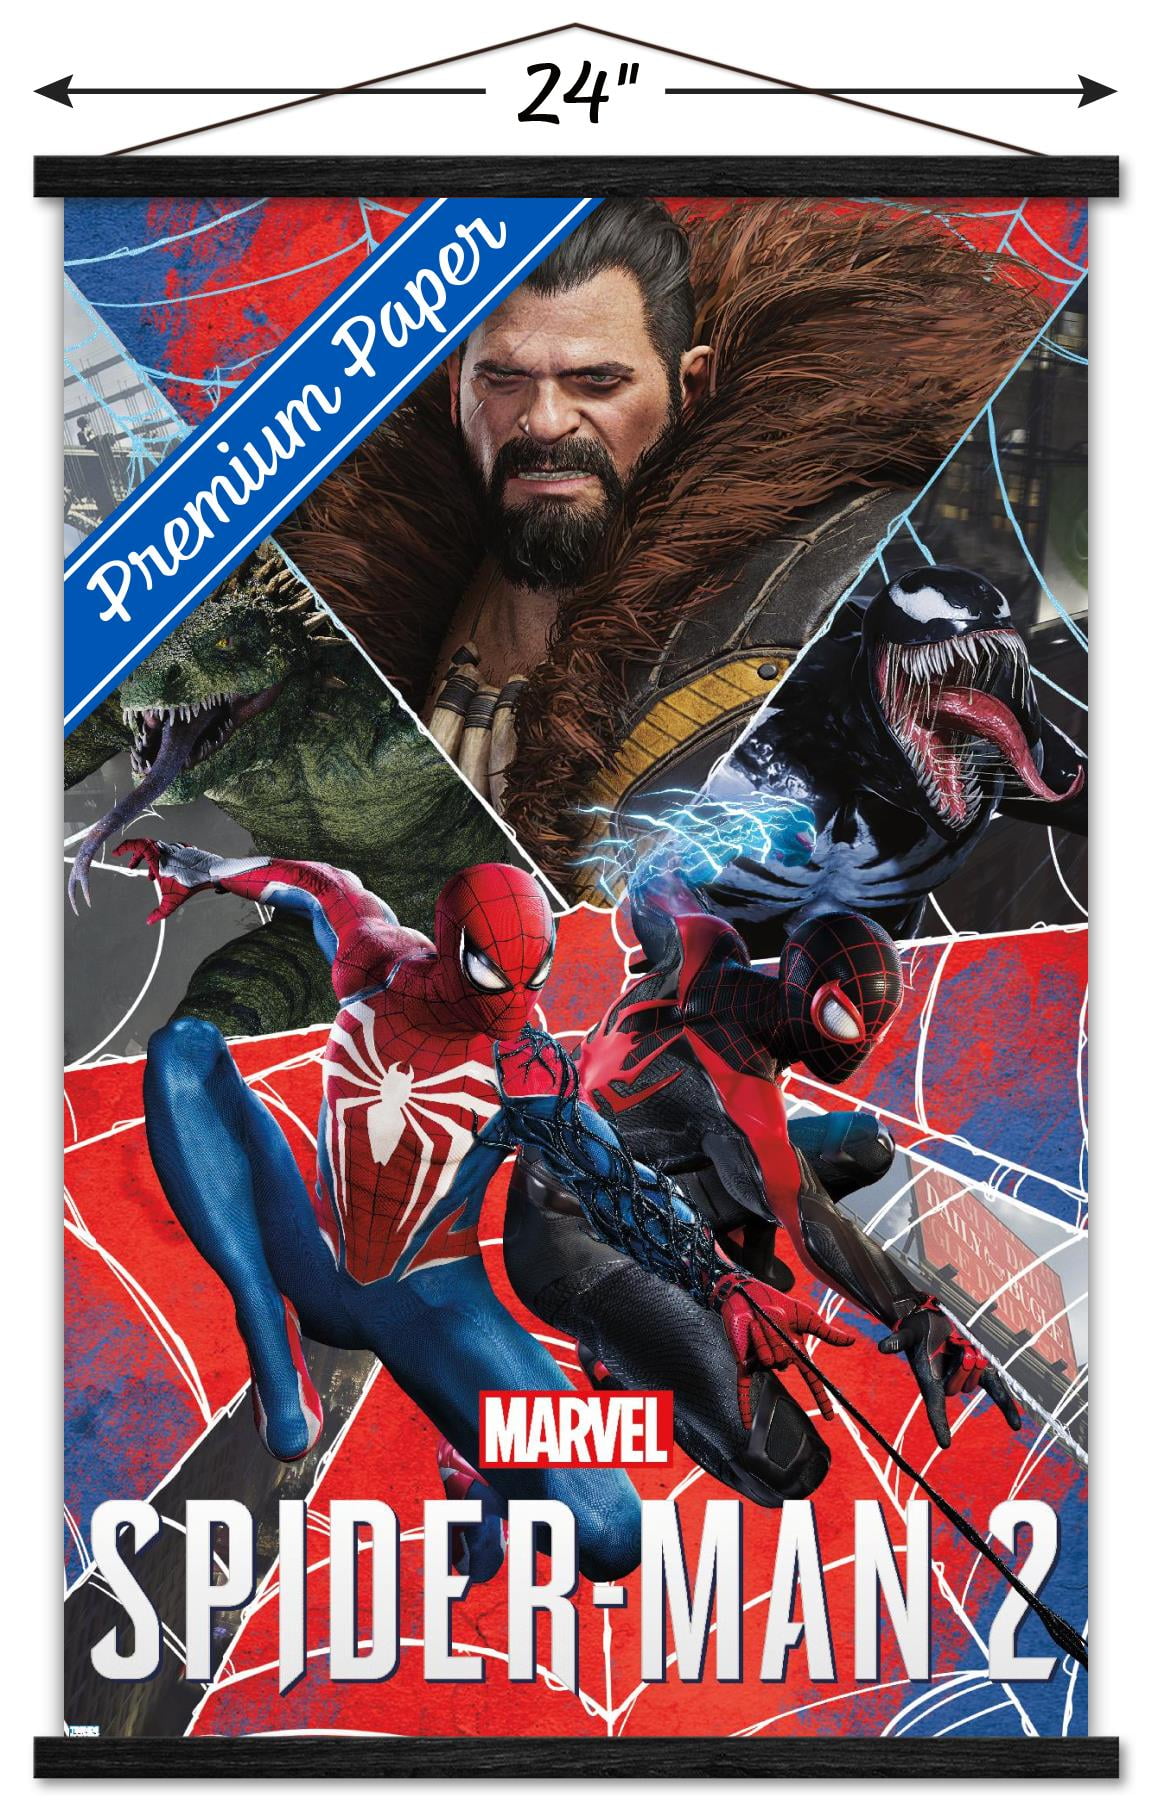 Marvel's Spider-Man 2 PREMIUM